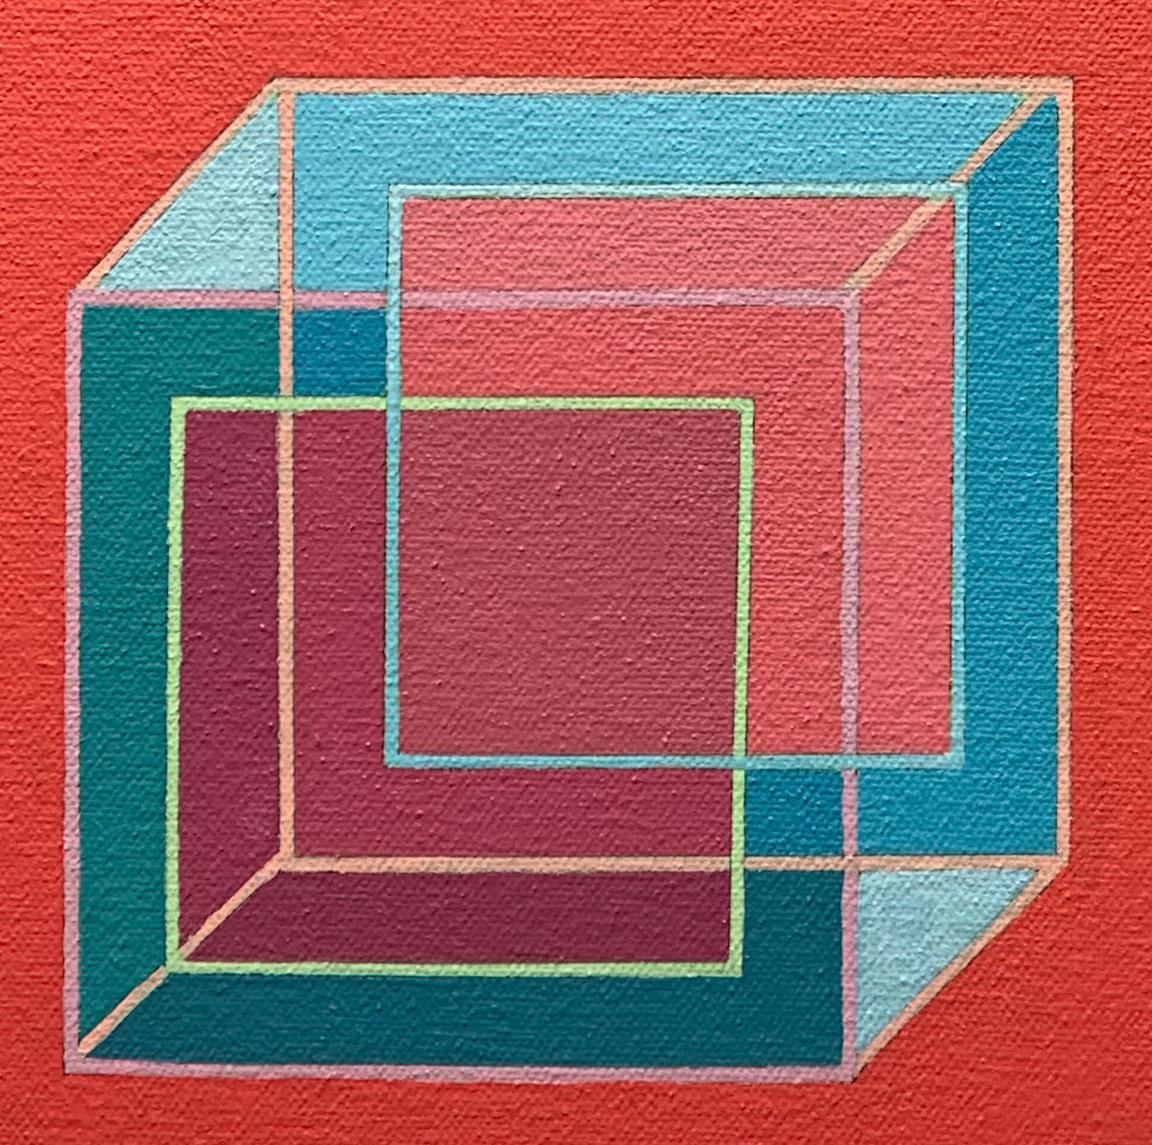 Inverse Würfel #4: geometrisches abstraktes Pop-Art-Op-Art-Gemälde in Grün, Blau, Rot (Abstrakt), Painting, von Benjamin Weaver